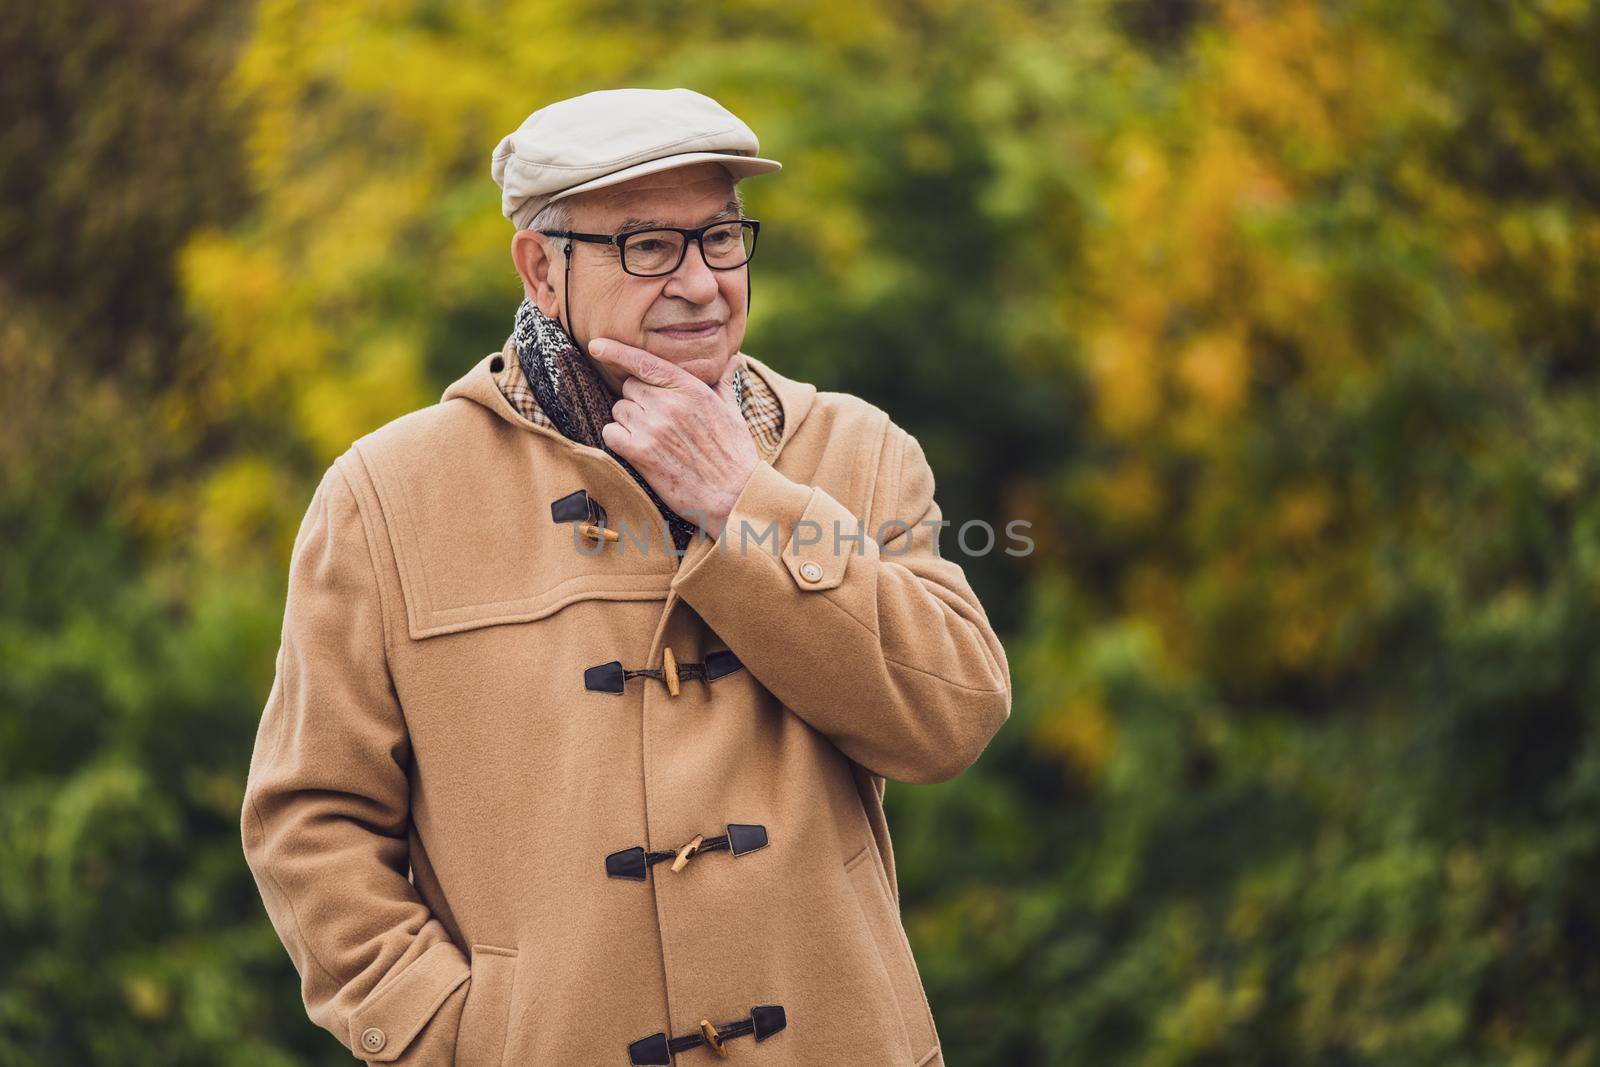 Outdoor portrait of worried senior man in winter coat.